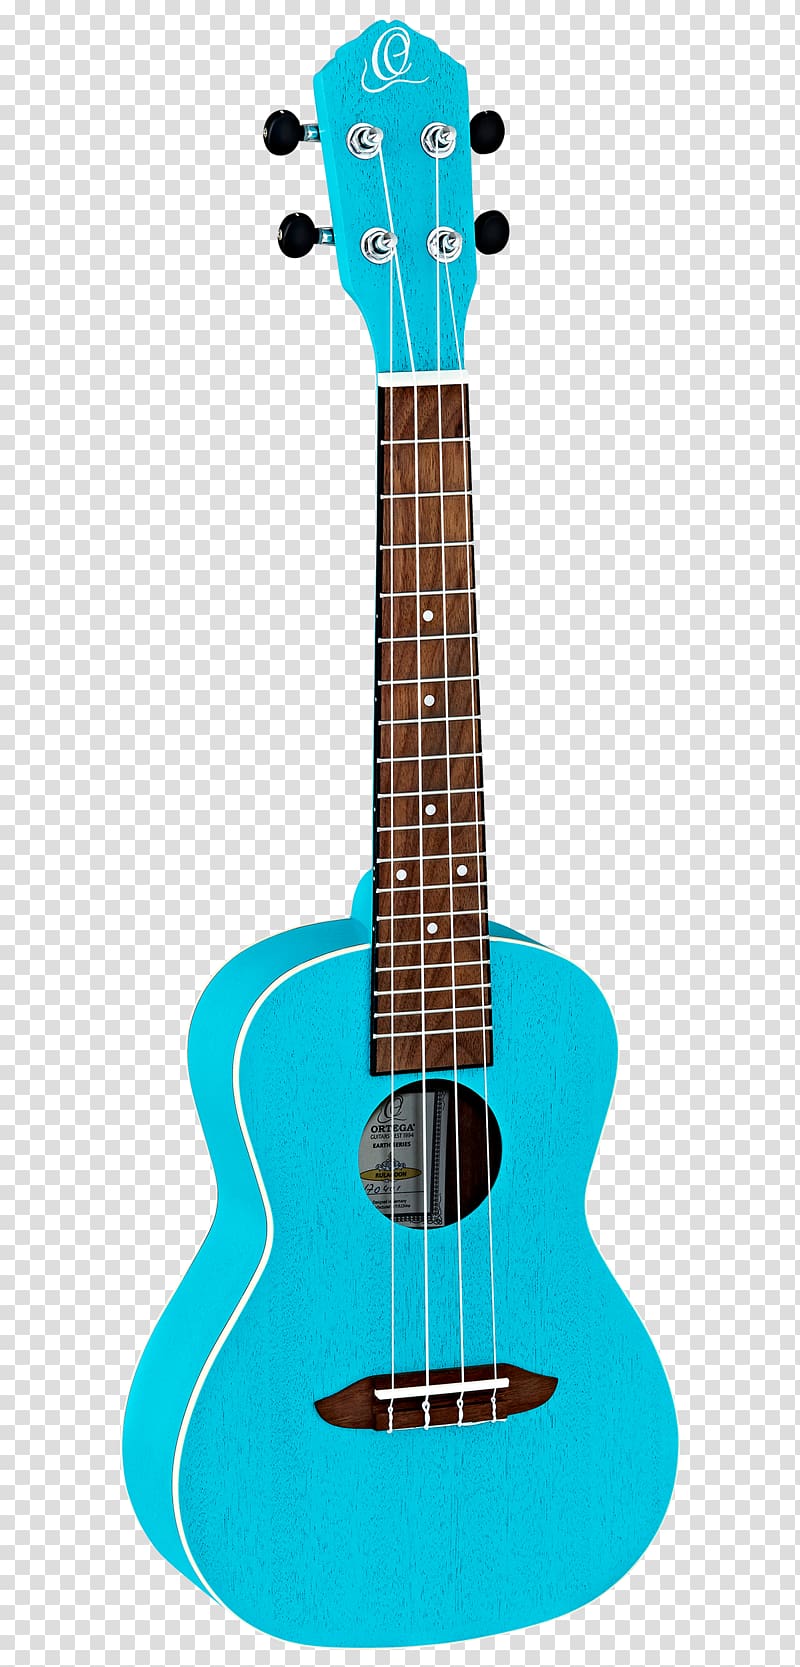 Ukulele Soprano Musical Instruments Guitar Electronic tuner, amancio ortega transparent background PNG clipart